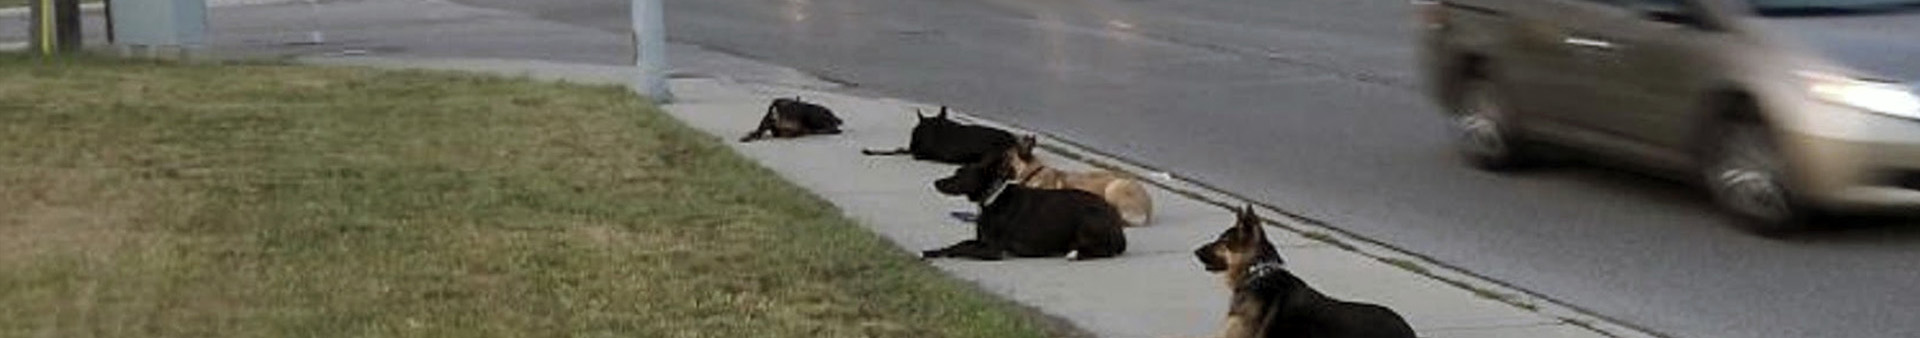 dogs sitting on sidewalk